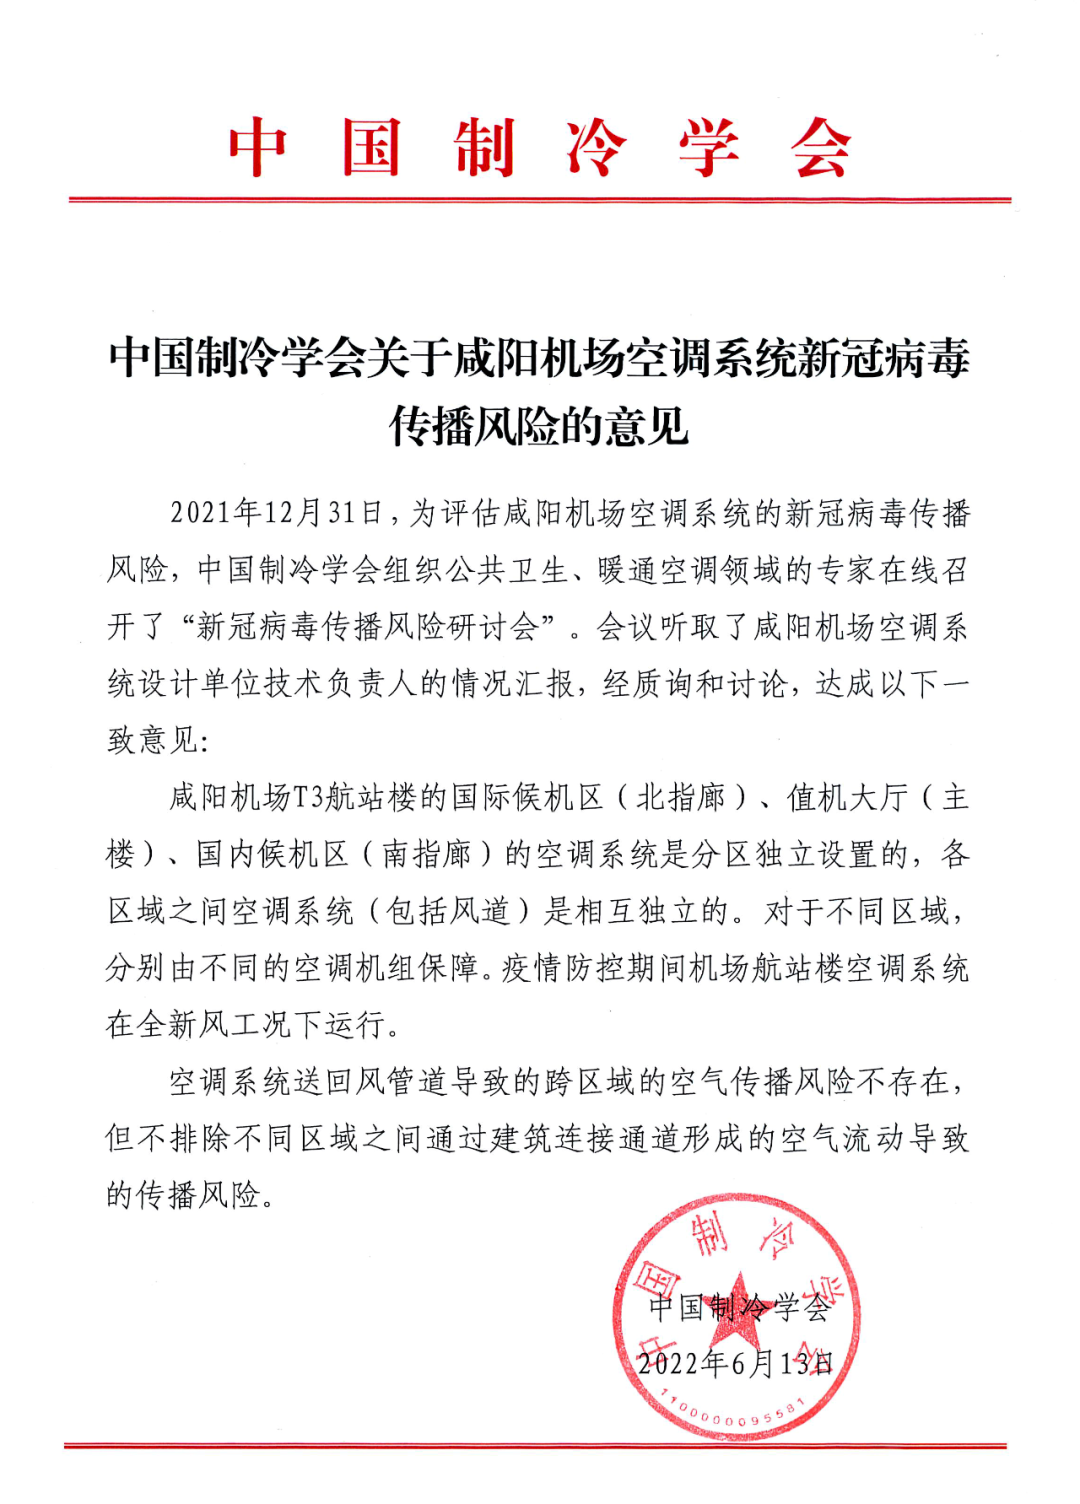 中国制冷学会关于咸阳机场空调系统新冠病毒传播风险的意见